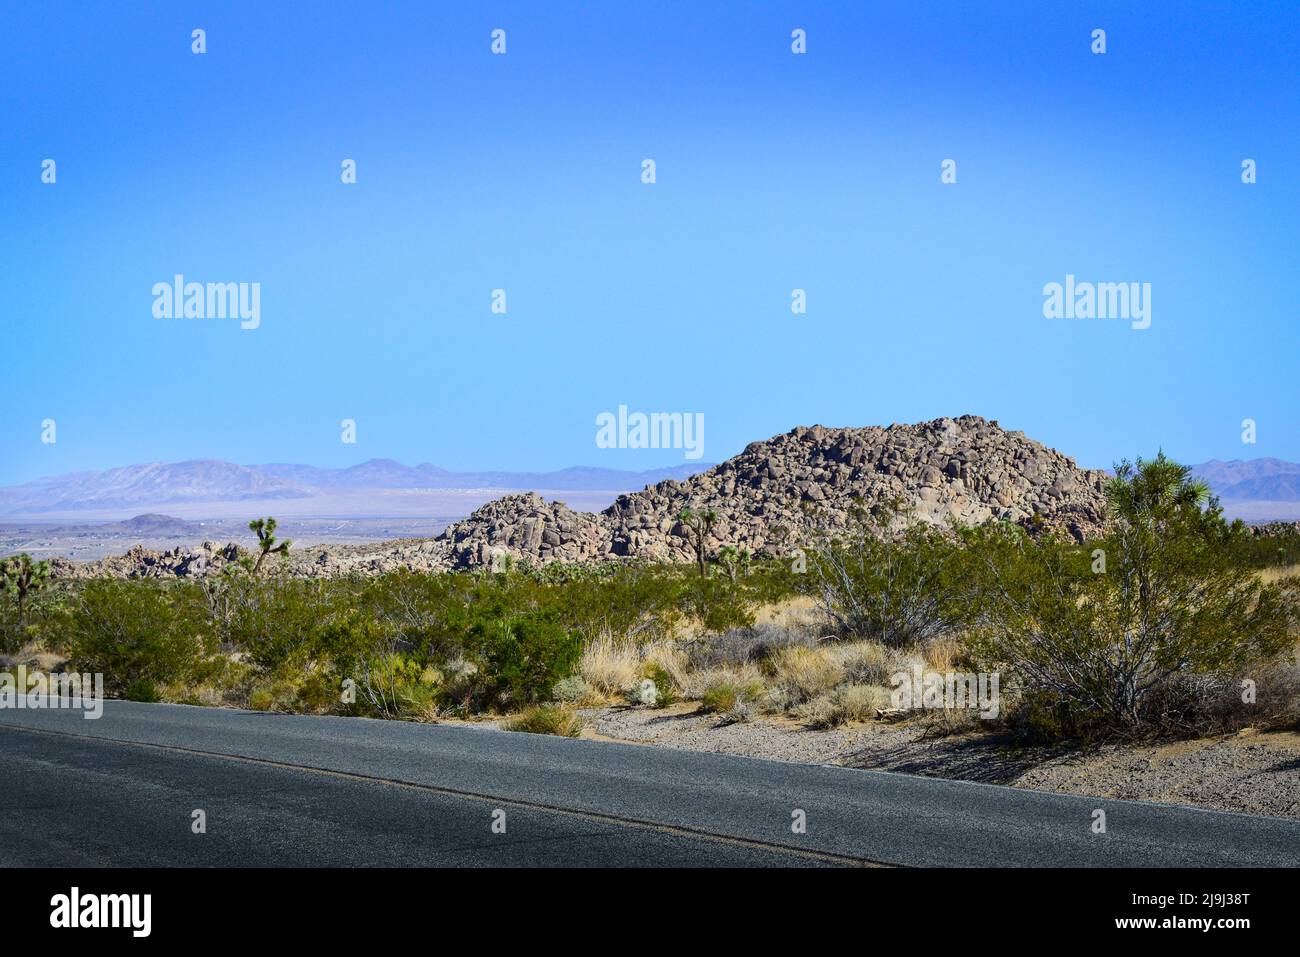 Joshua Tree National Park, en el desierto de Mojave, con una vista de la carretera del creciente valle de Coachcella y formaciones rocosas con paisaje desértico, CA Foto de stock